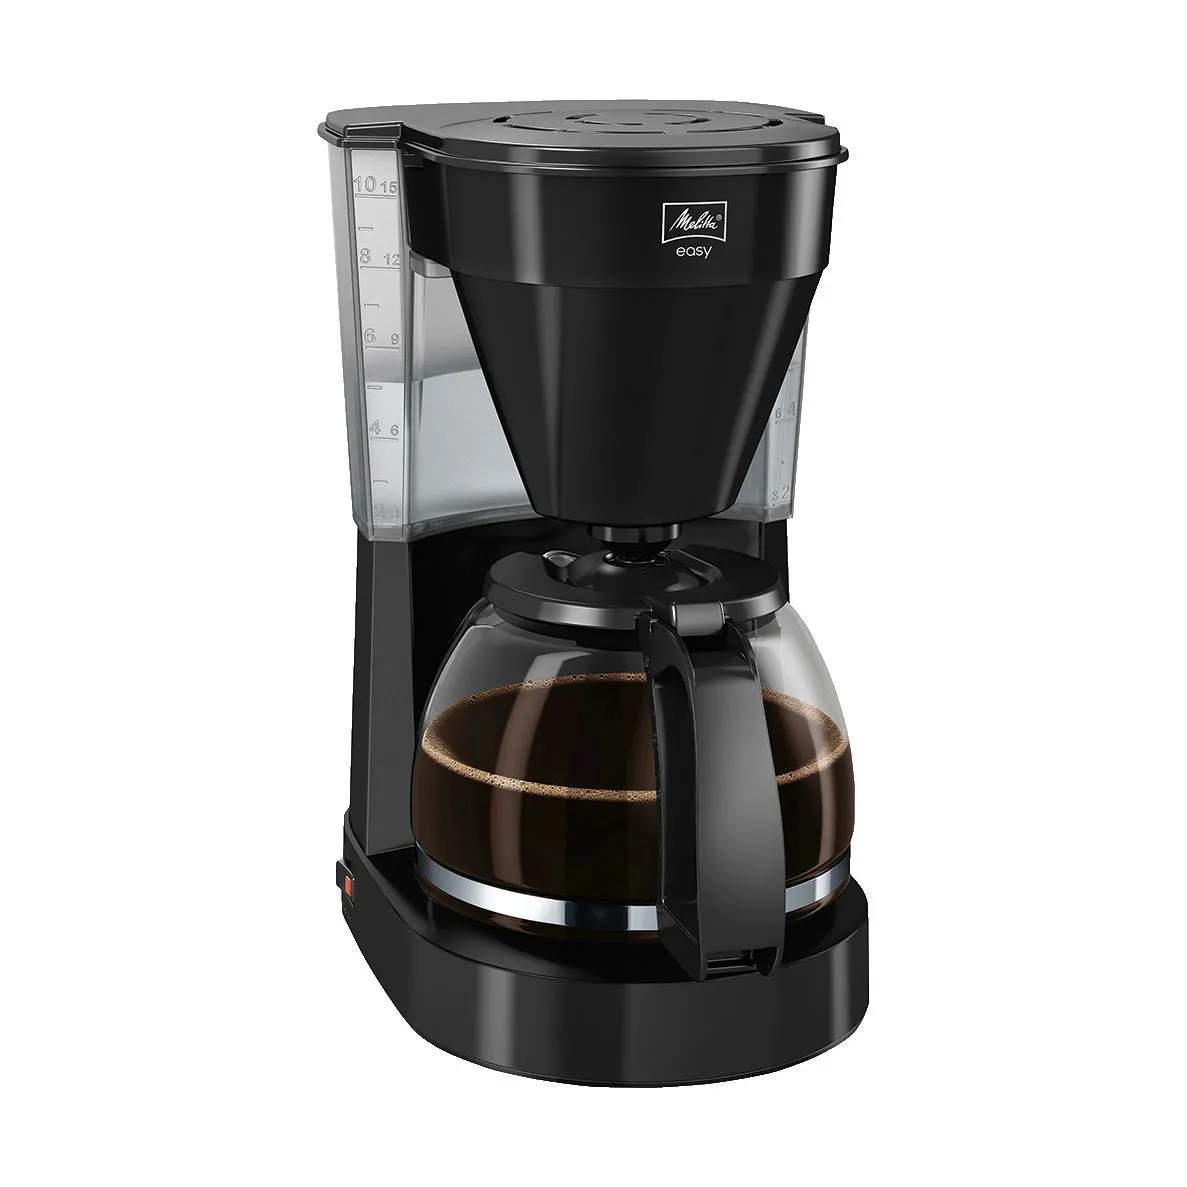 Kaffemaskine Easy II, sort, large